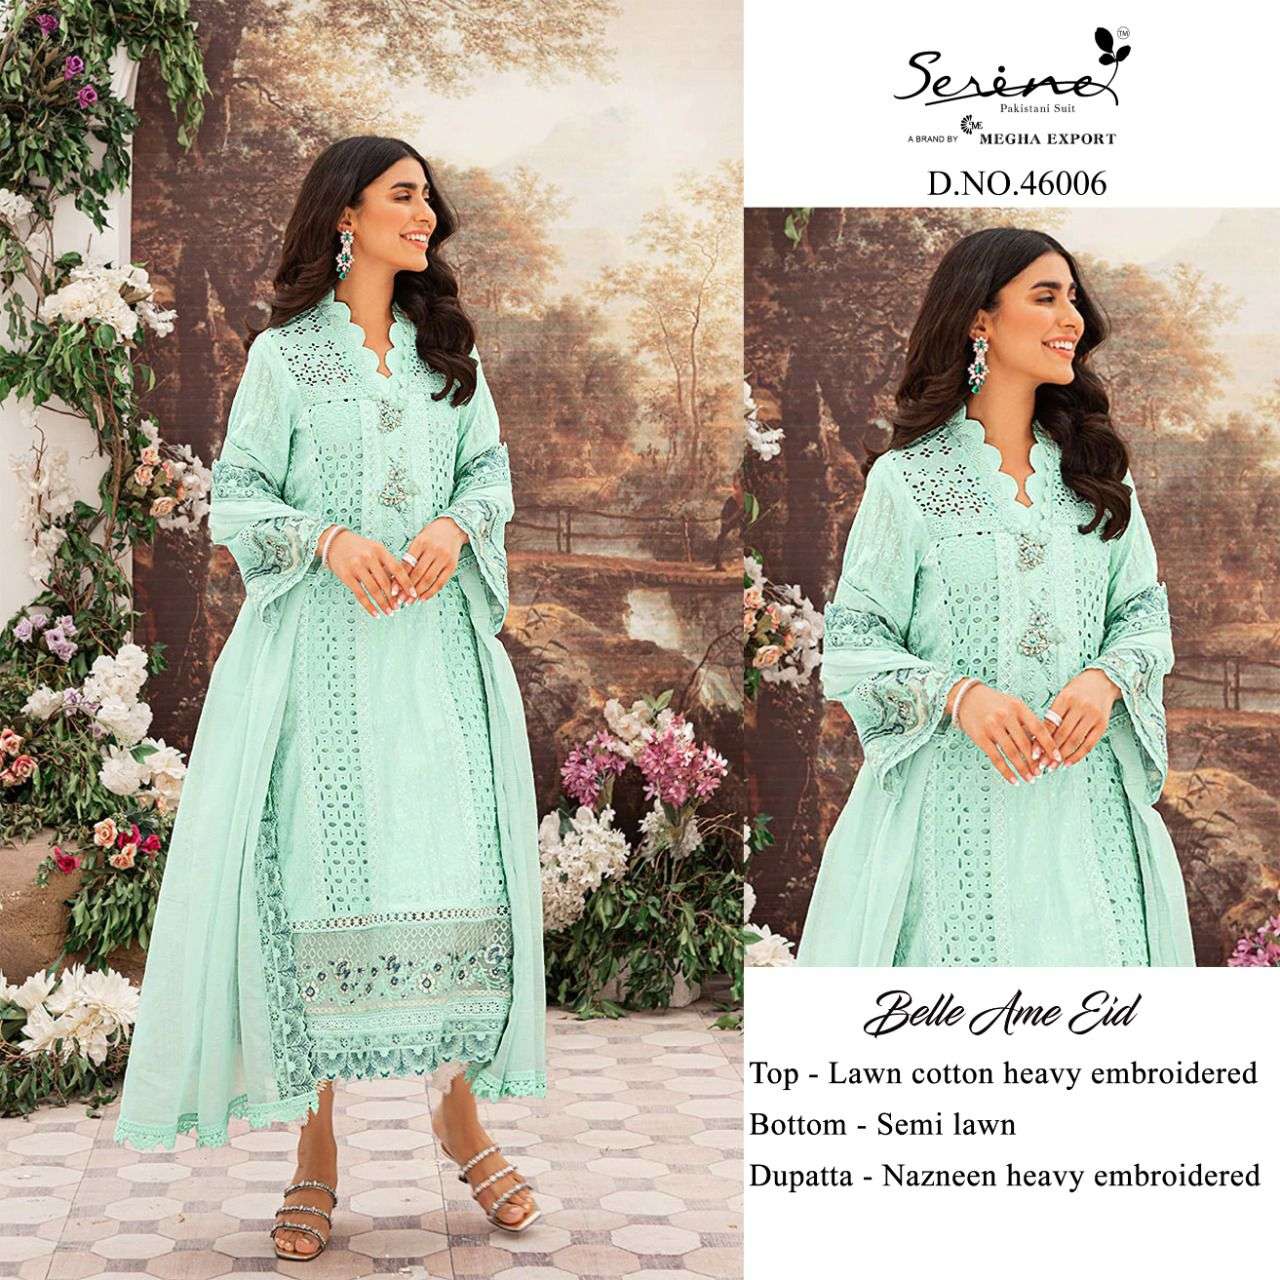 serene belle ame eid 46001-46006 series pakistani salwar kameez wholesale price surat